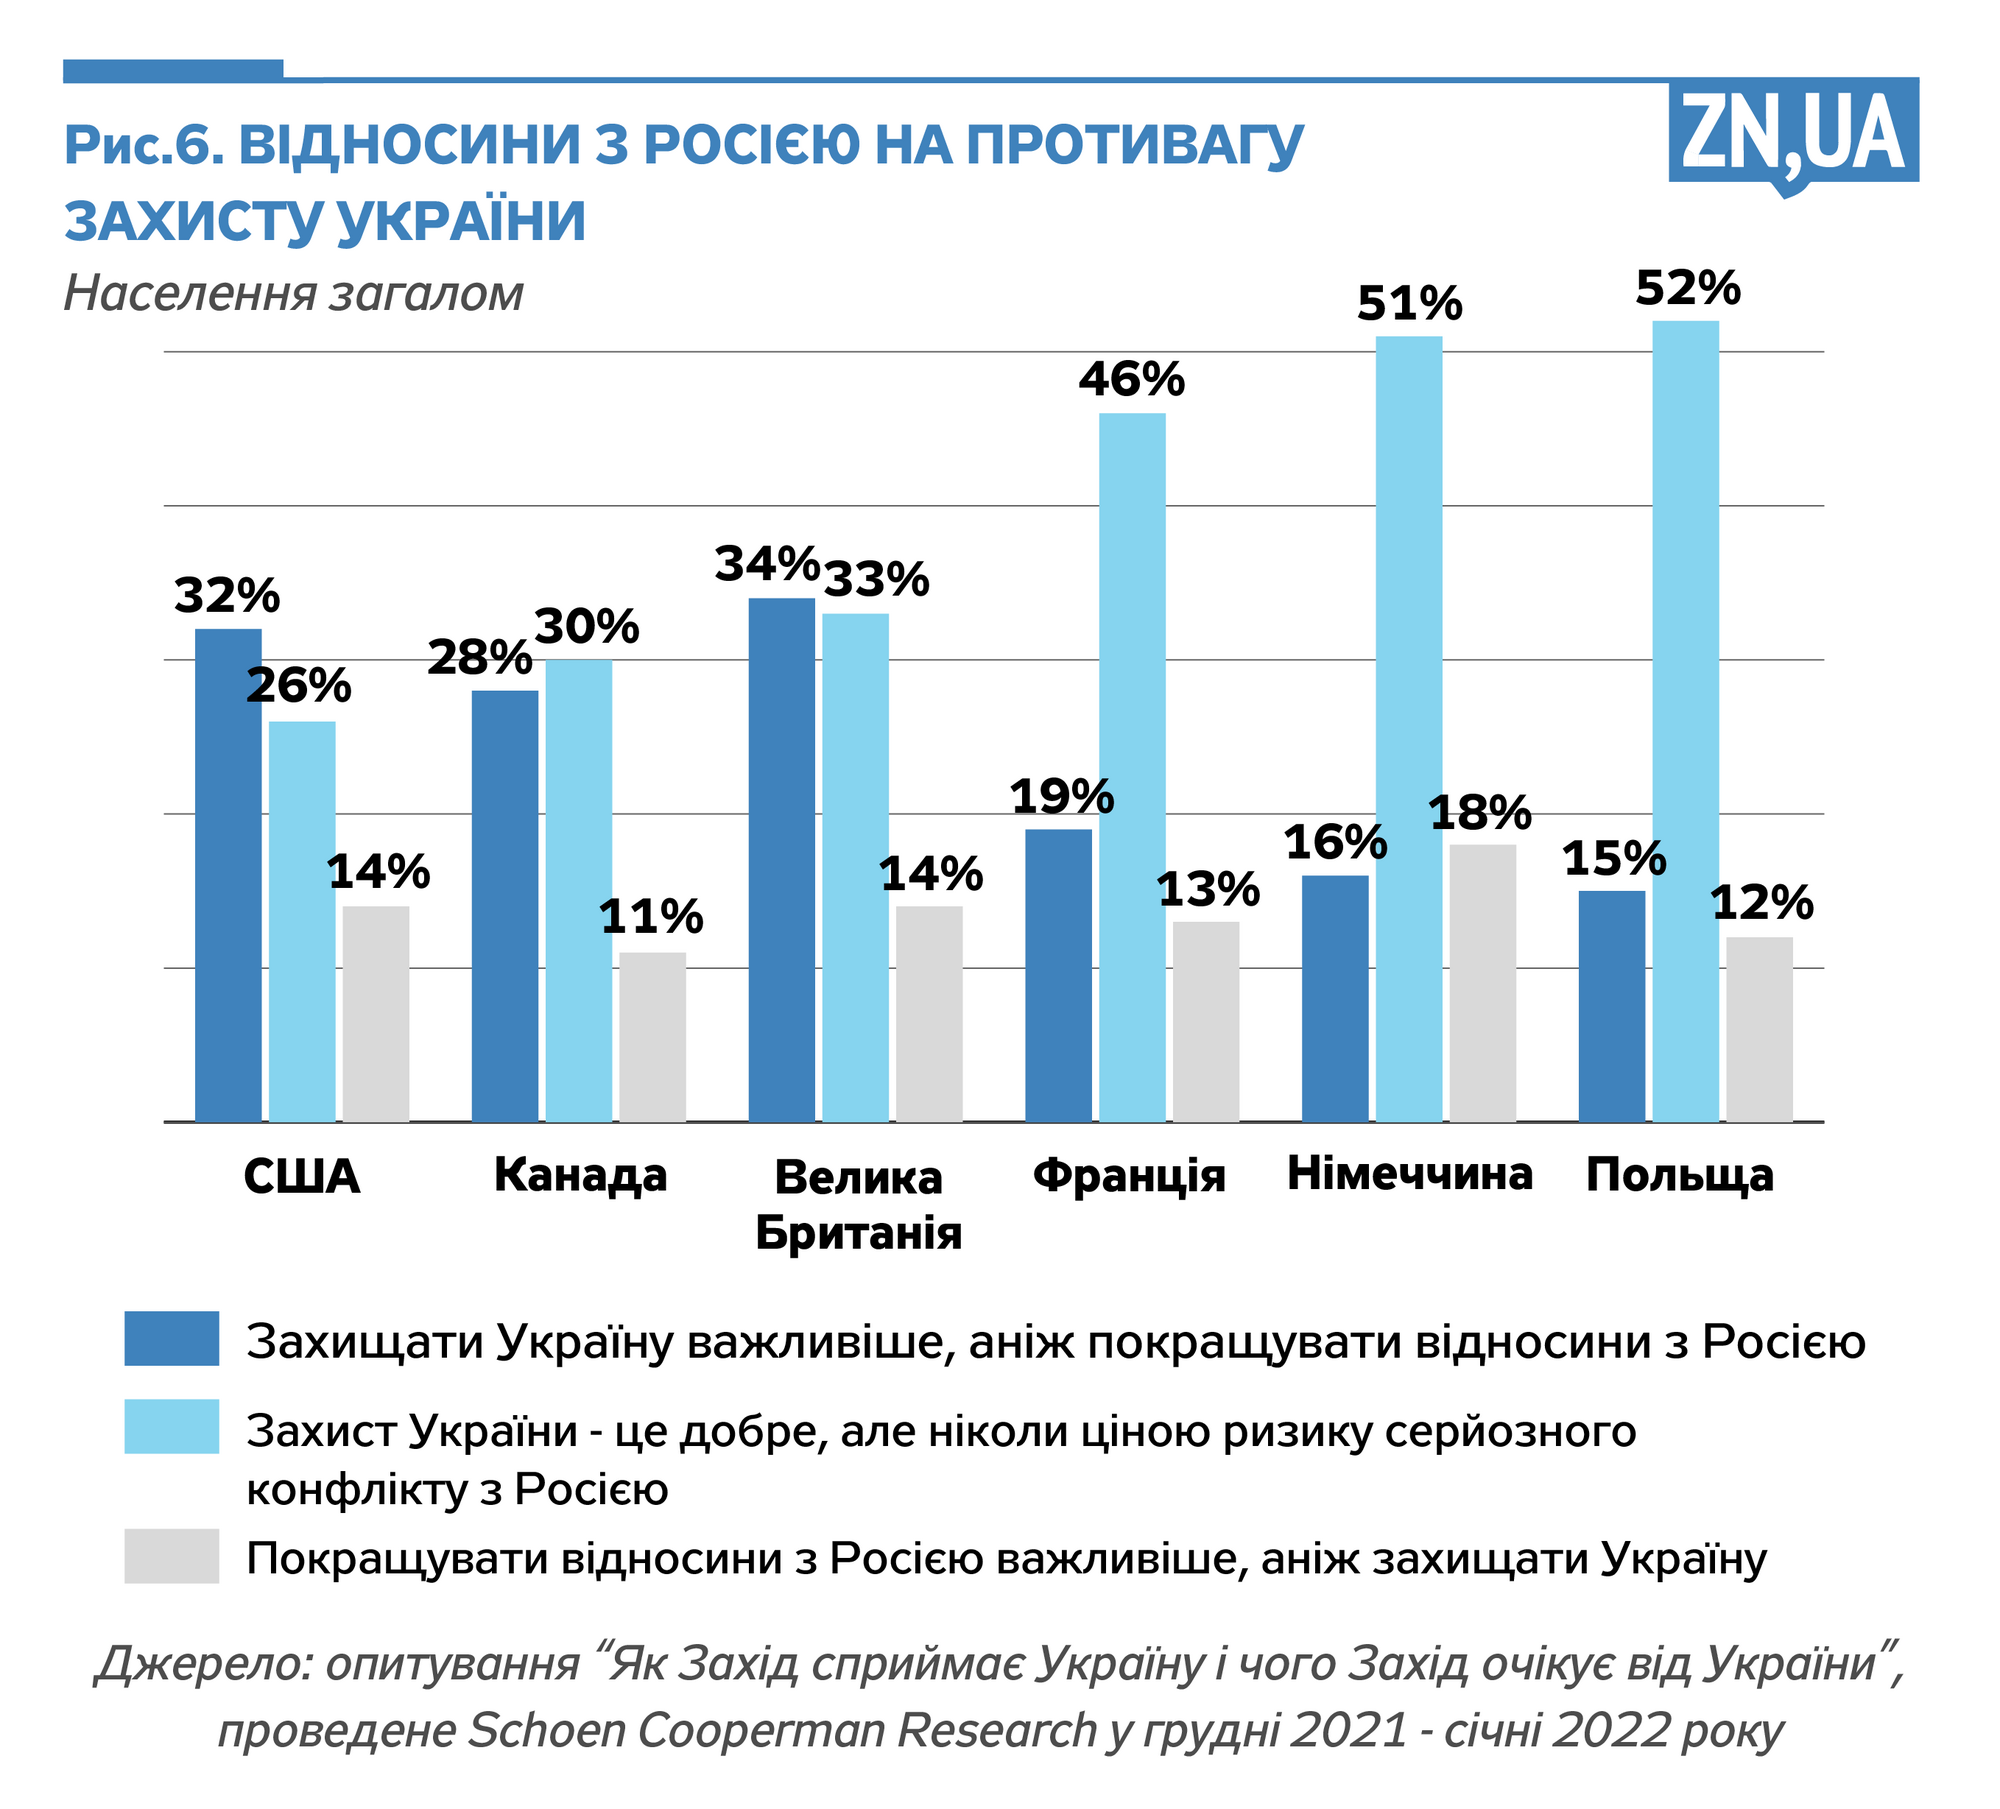 Инфографика ZN.ua